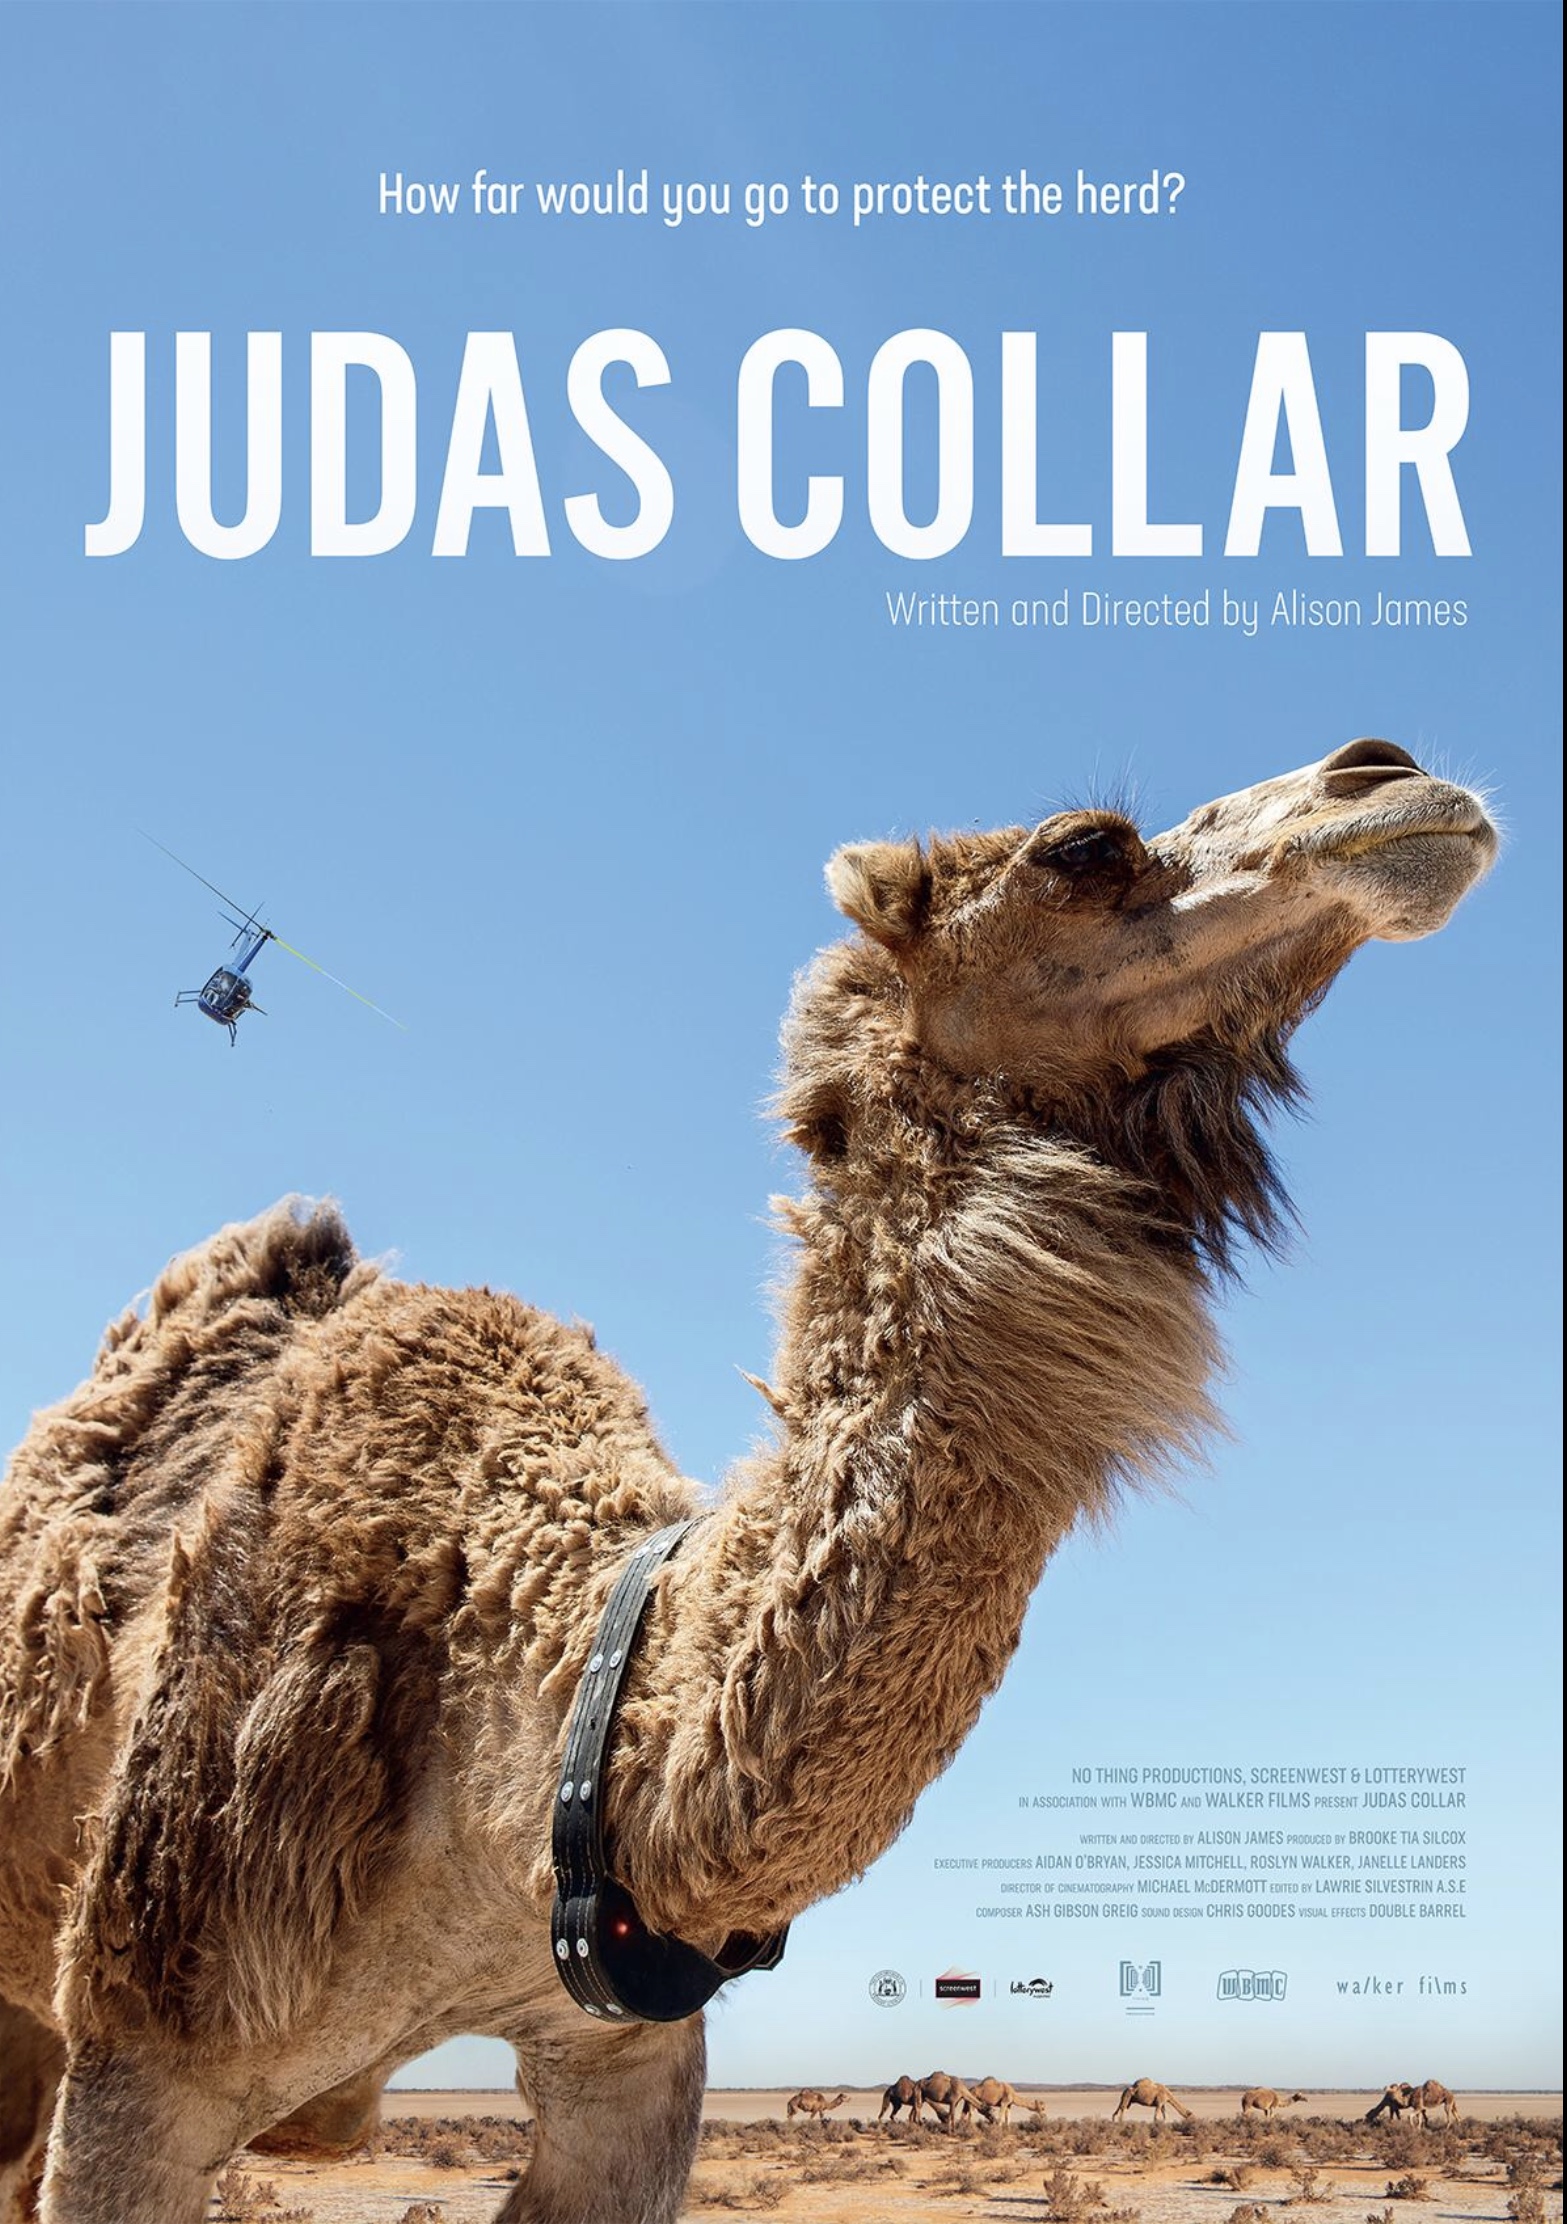 Judas Collar Image